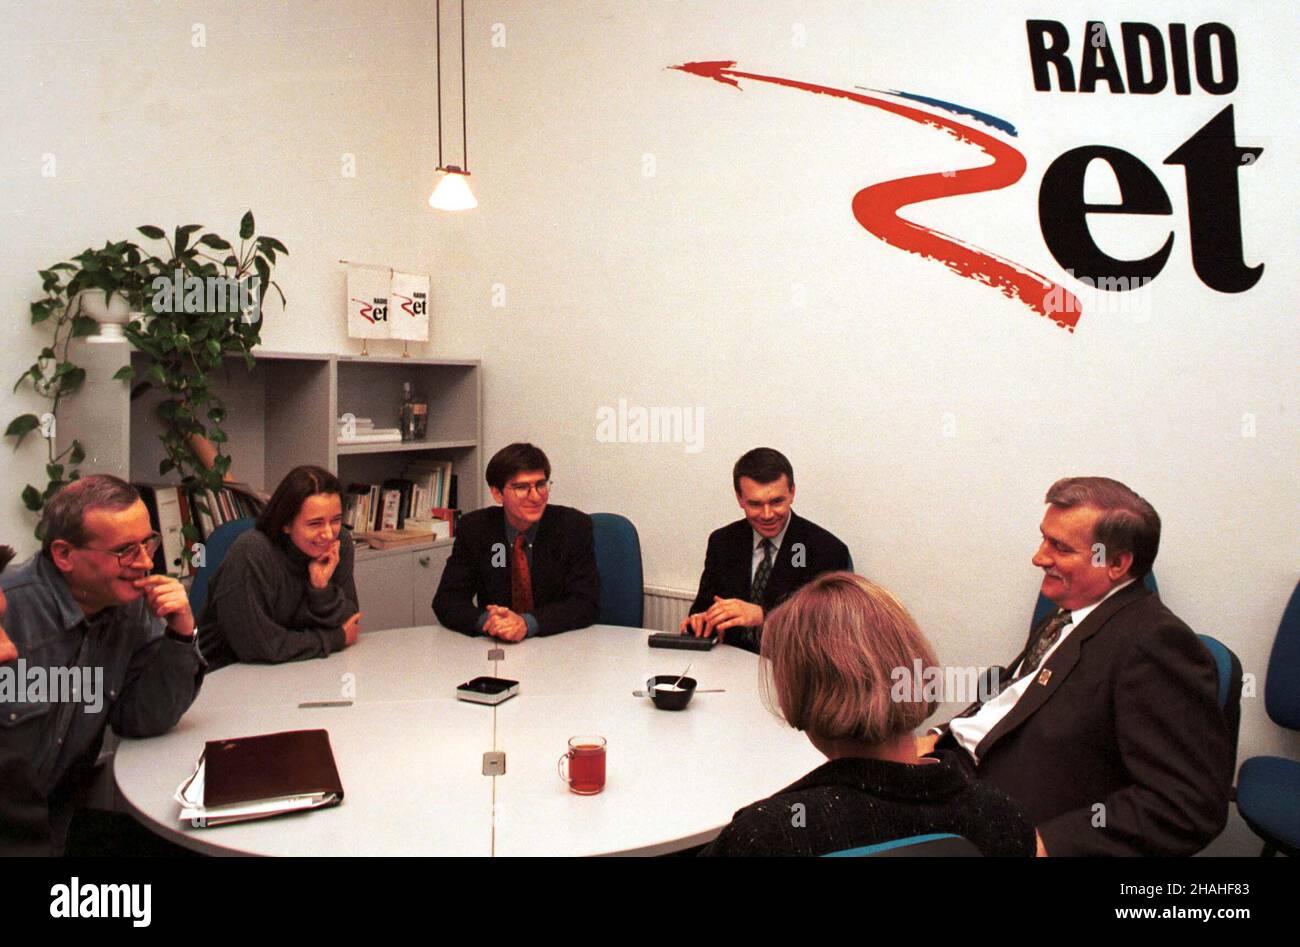 Warszawa, 11.03.1995. Prezydent Lech Wa³êsa (P) udzieli³ wywiadu w Radiu ZET. N/z: Lech Wa³êsa i dziennikarze: Janusz Weiss (L) i Krzysztof Skowroñski (3L). (kru) PAP/Maciej B. Brzozowski     Warsaw, 11.03.1995. President Lech Walesa (R) gave an interview to the Polish commercial Radio ZET. Pictured: Lech Walesa (R) and journalists Janusz Weiss (L) and Krzysztof Skowronski (3L). (kru) PAP/Maciej B. Brzozowski Stock Photo